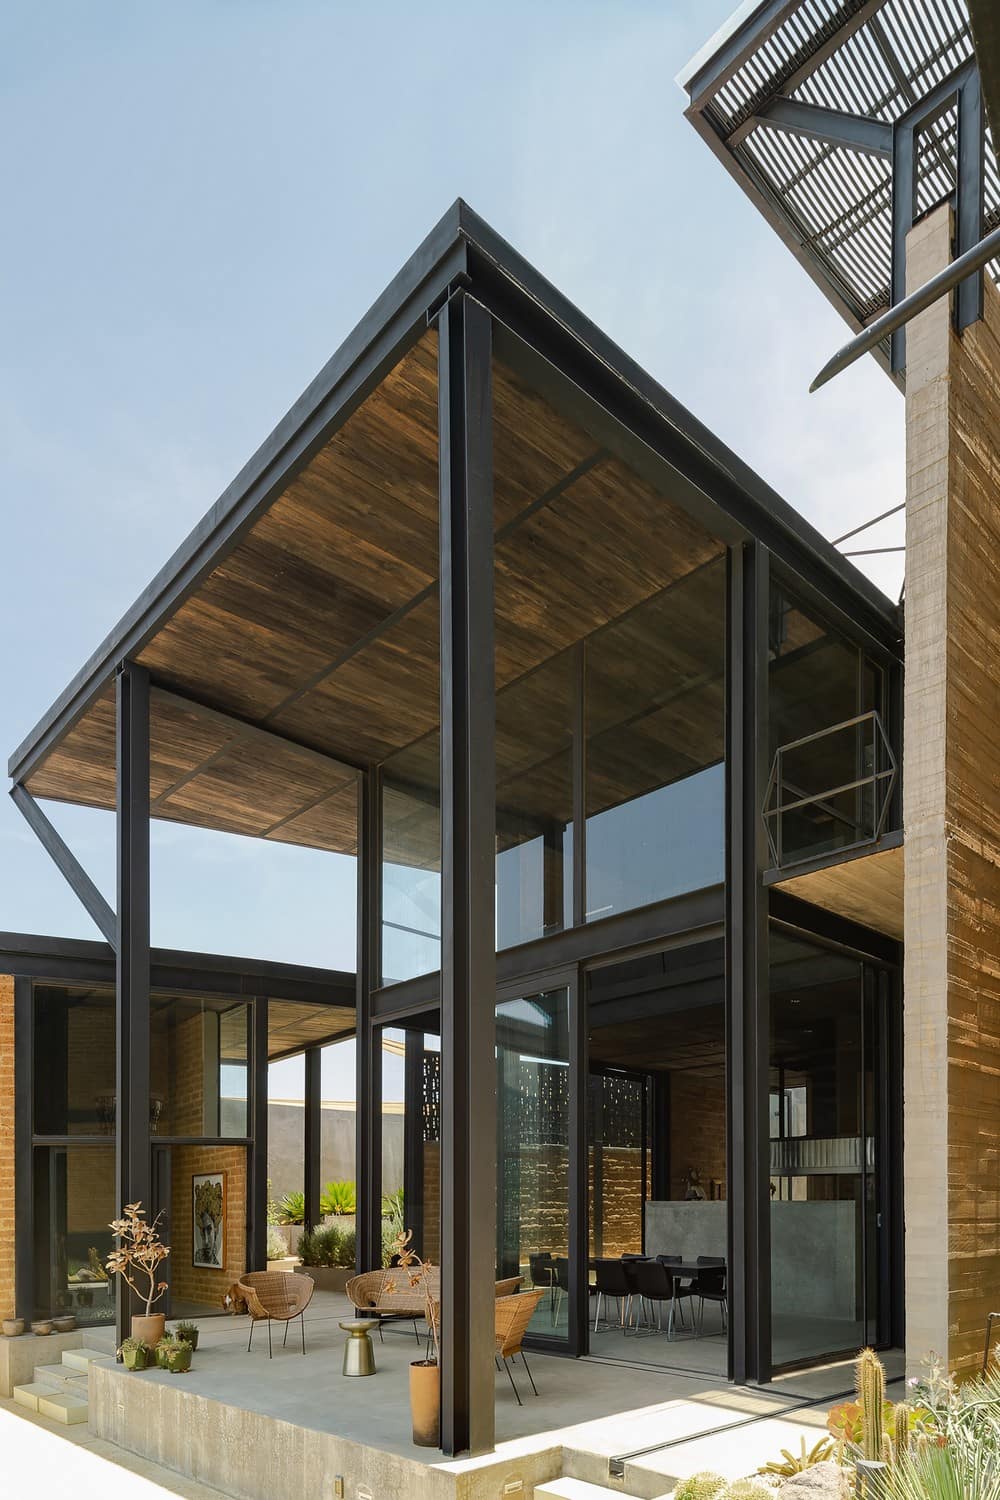 Casa Nube by NV/design architecture